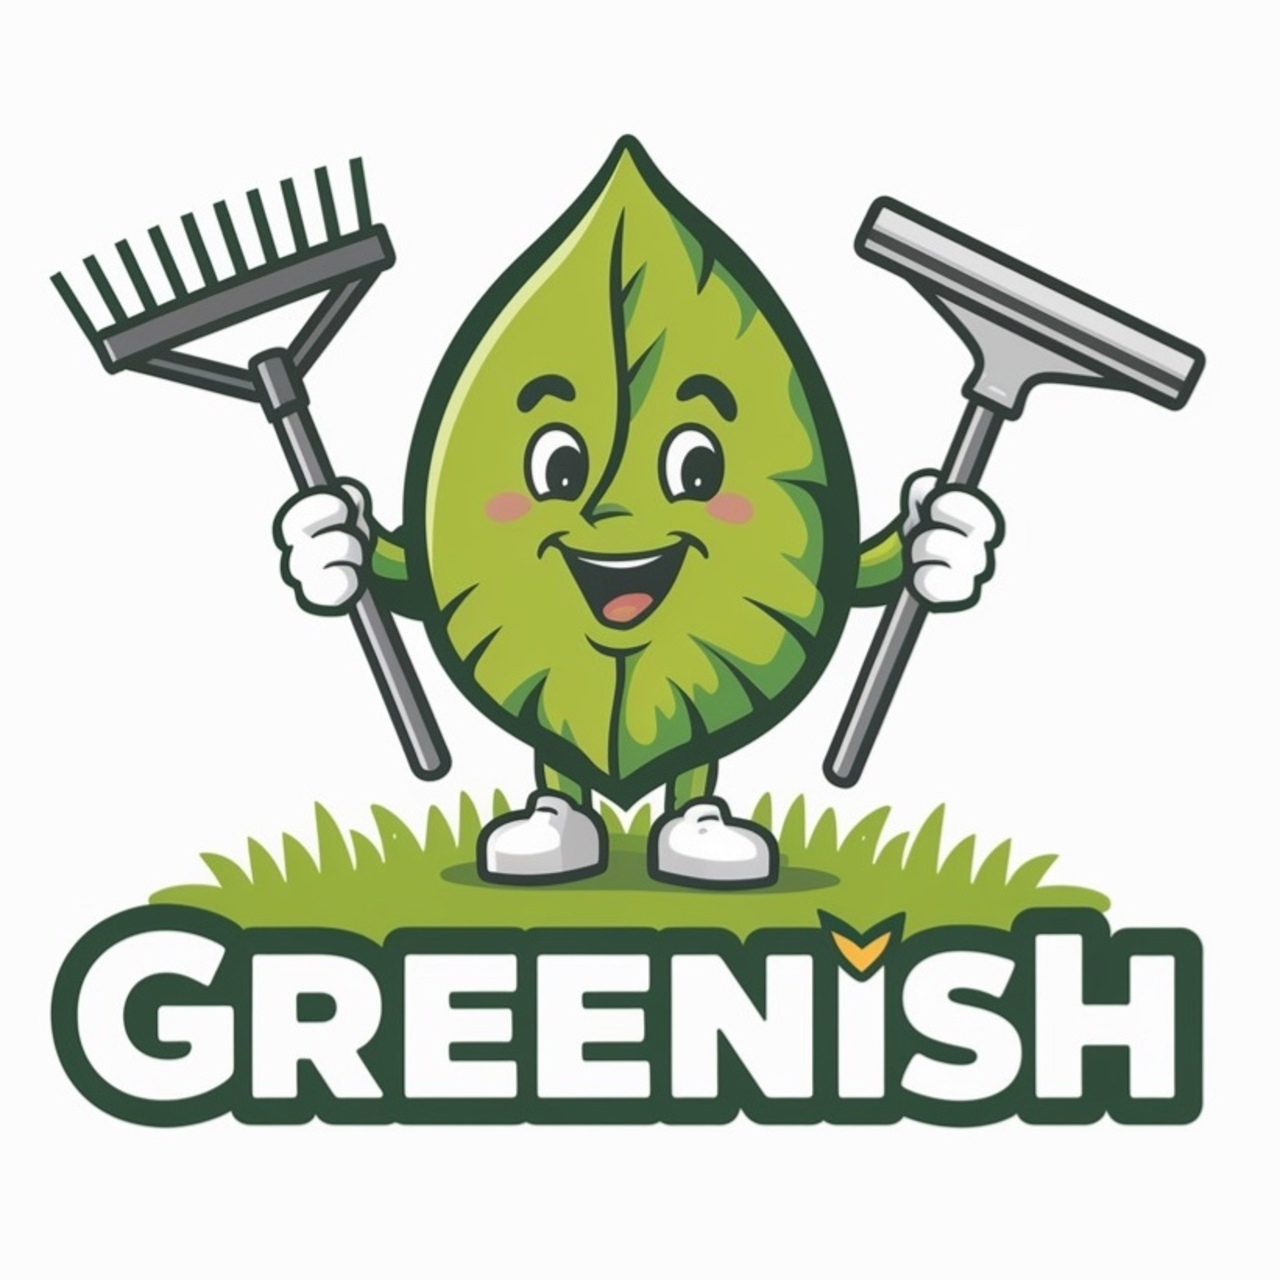 Greenish's logo